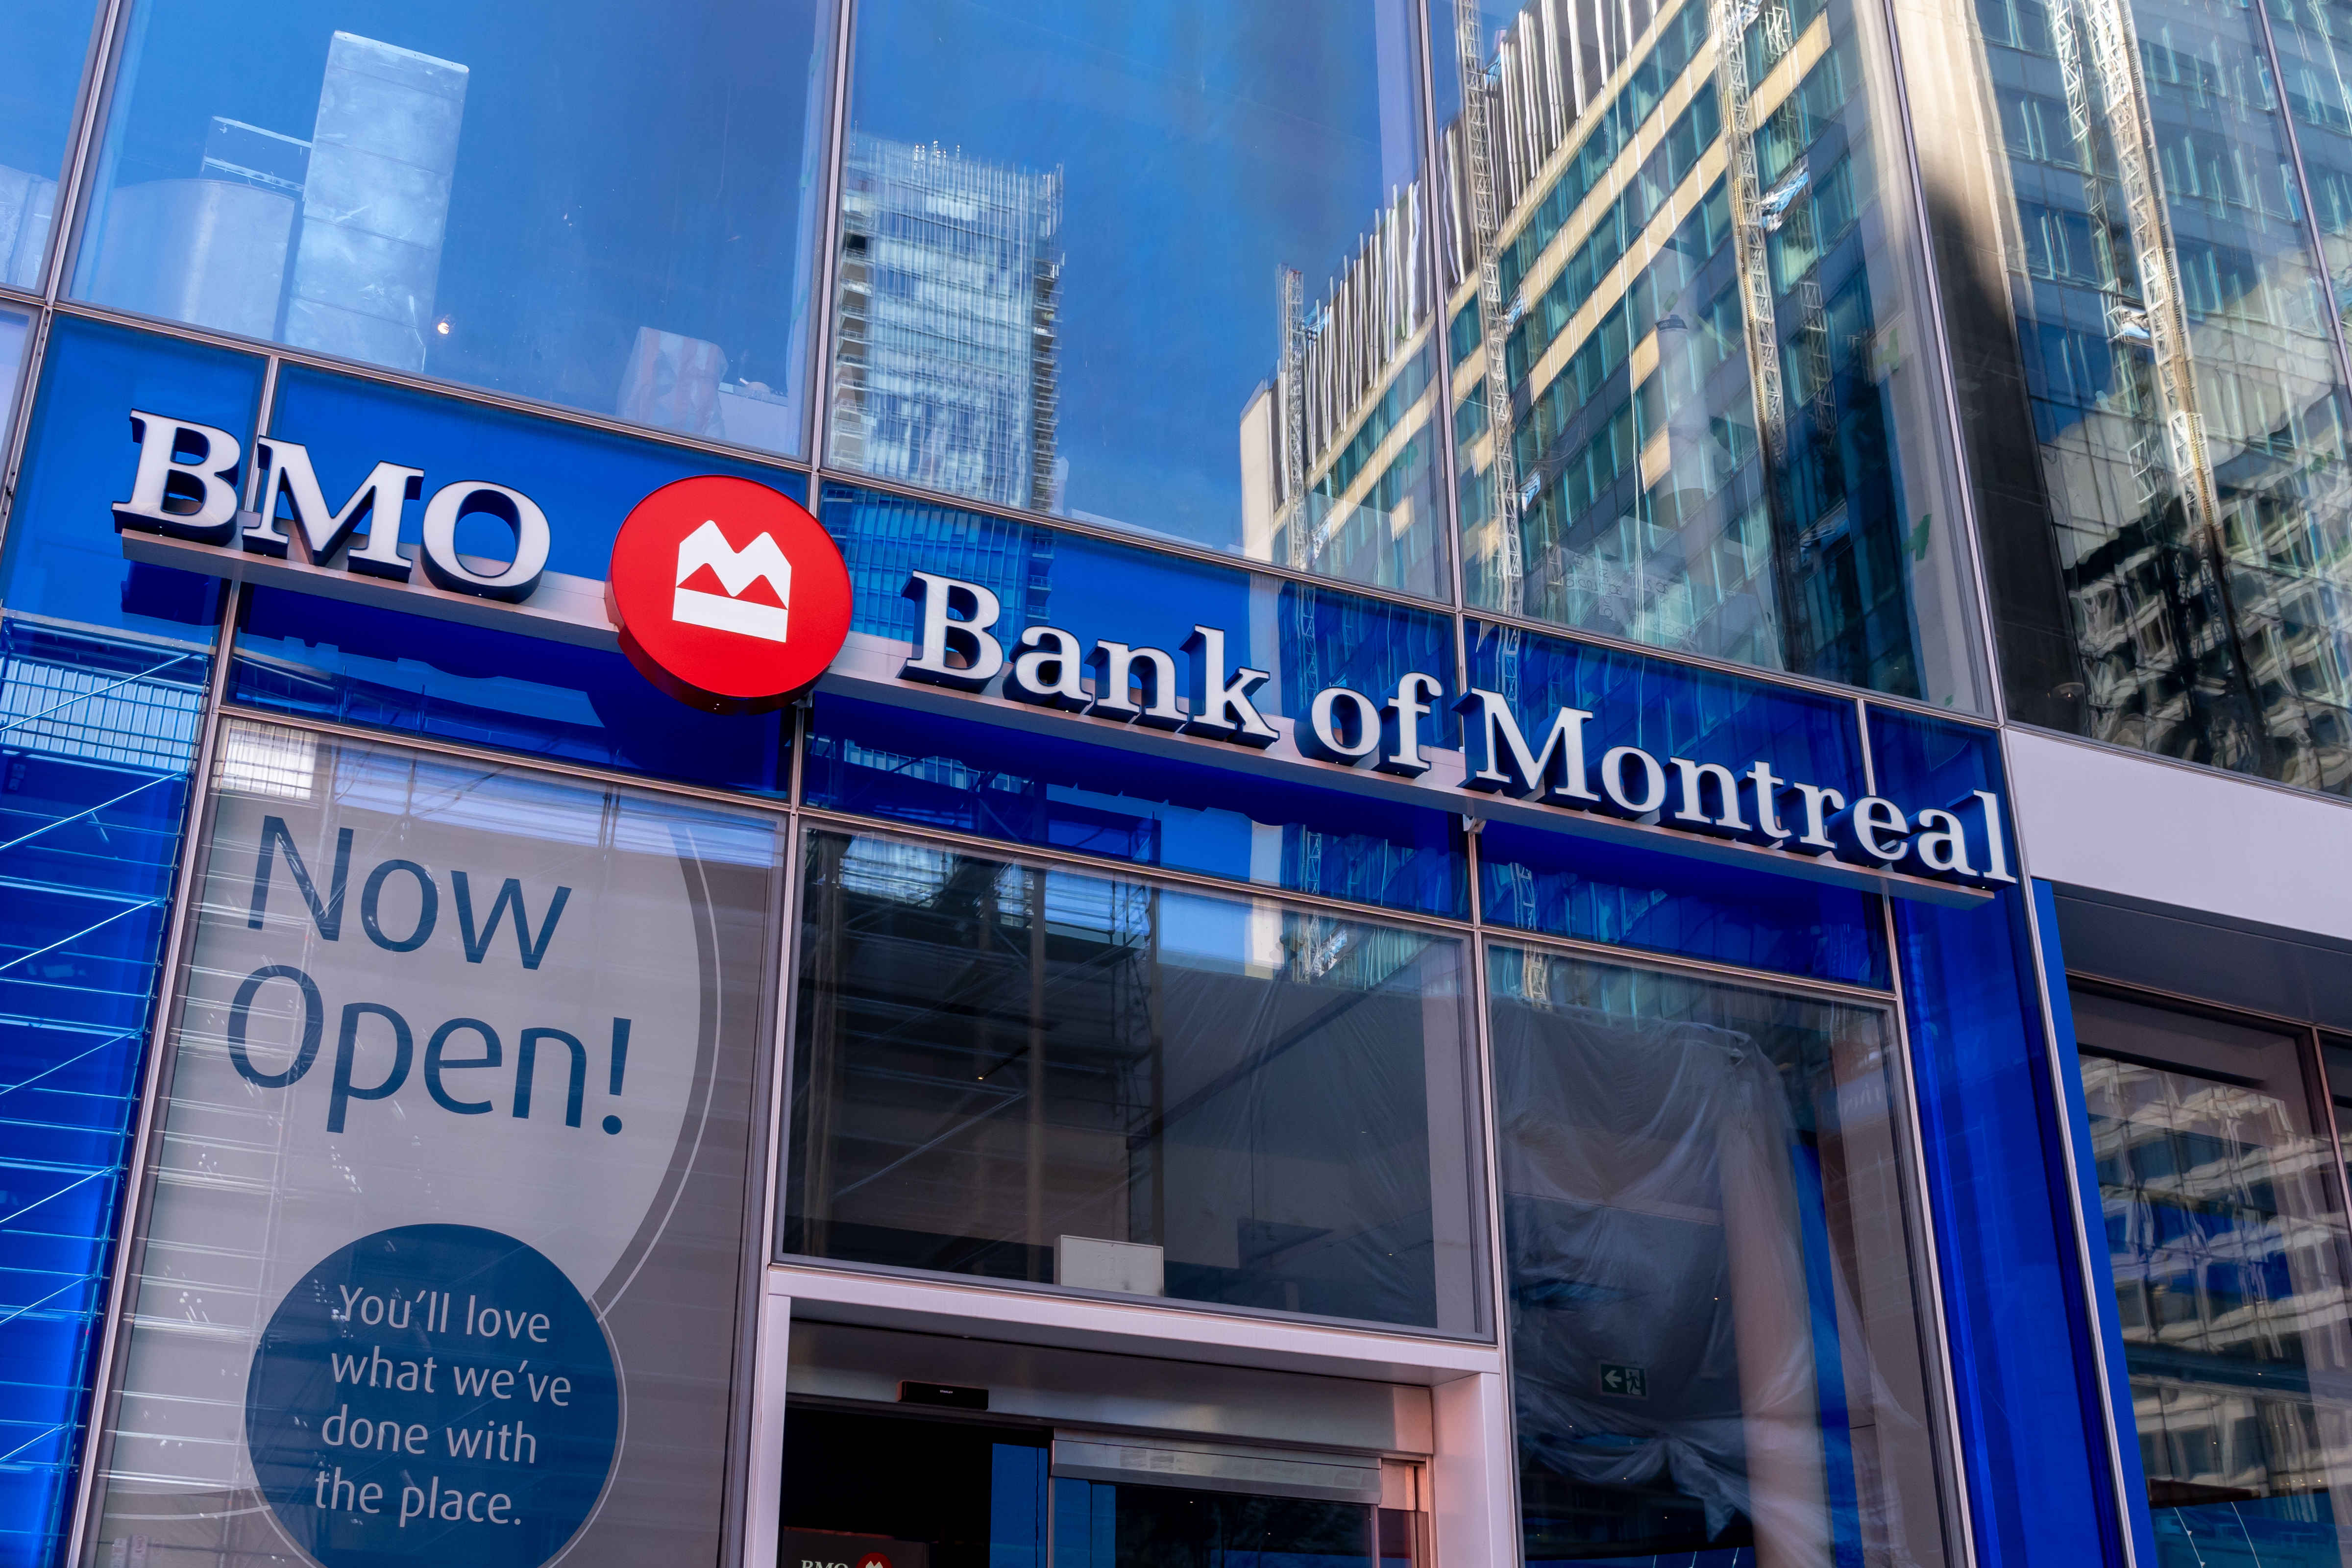 Image of BMO Bank